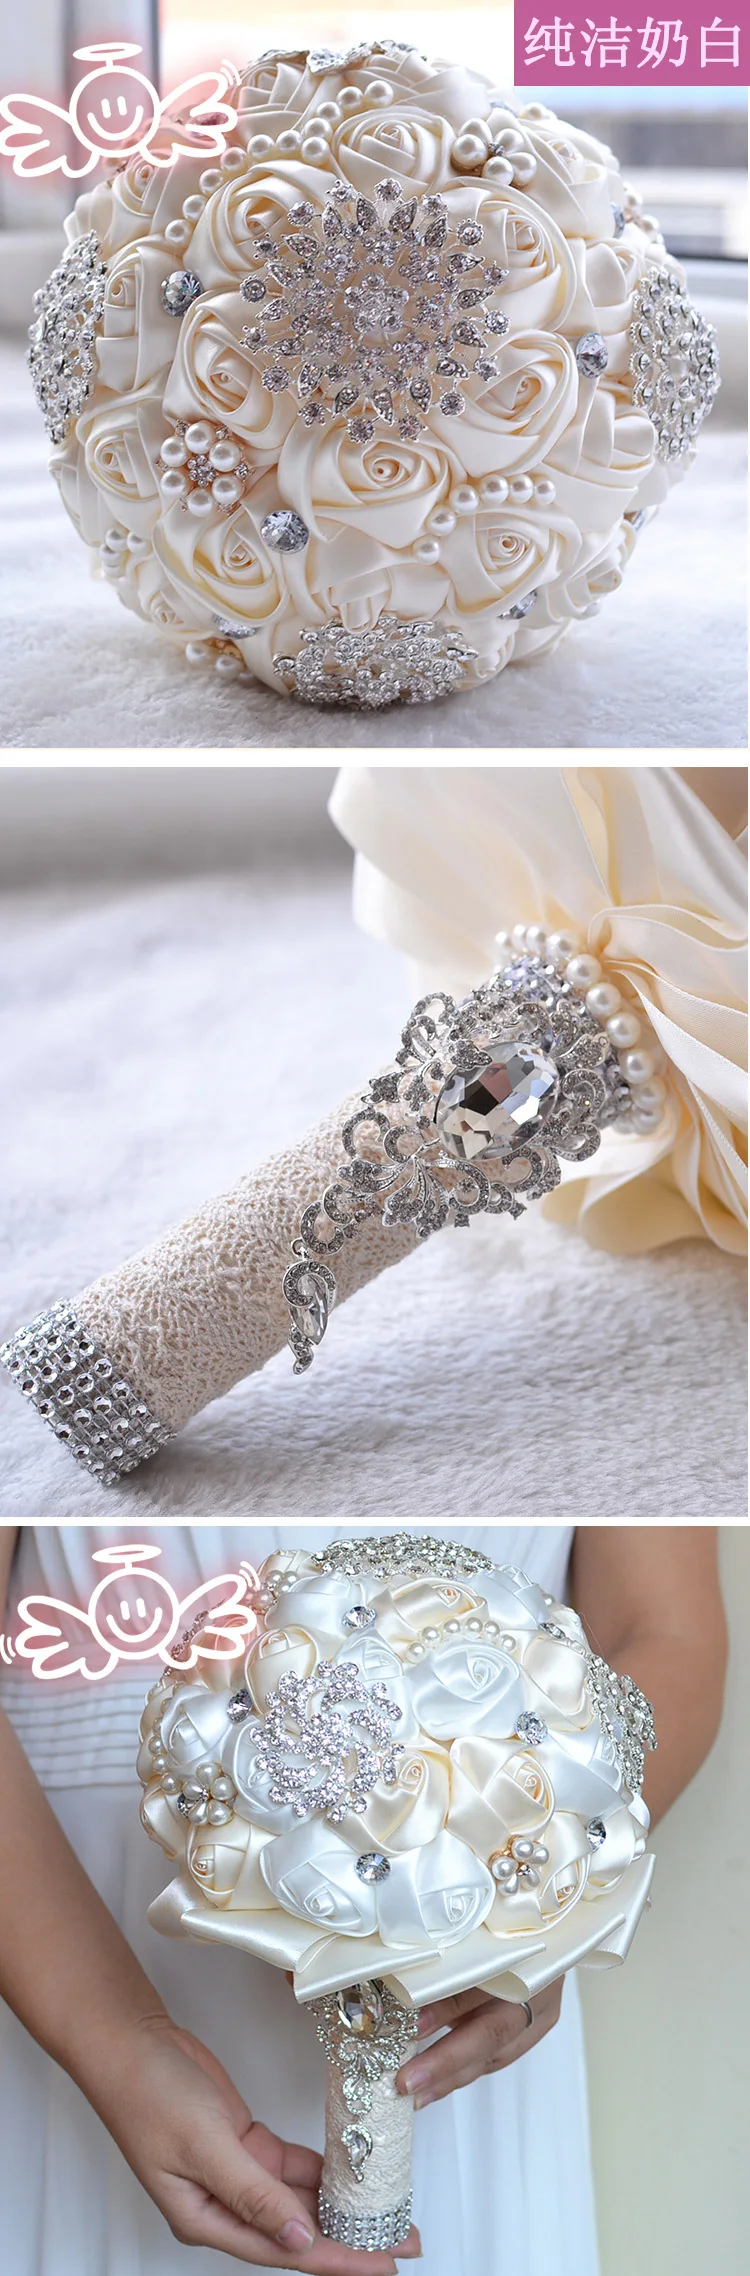 Роскошные Алмазный Rhinestone Свадебные букеты с оборками Край 2018 молока белая роза Свадебные цветы для невесты